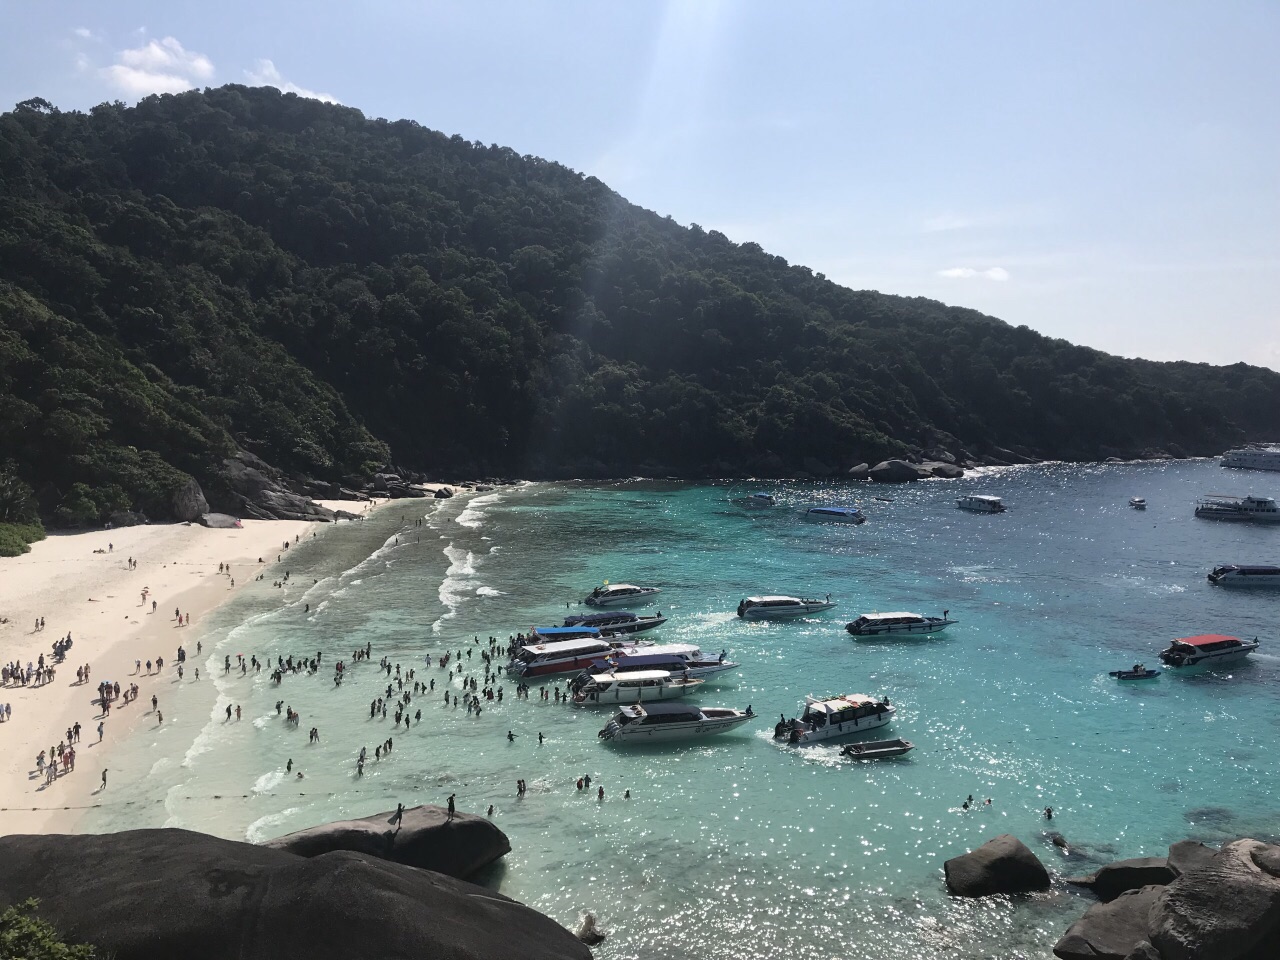 【携程攻略】Lam Kaen斯米兰群岛景点,斯米兰群岛海水真的太蓝了，清澈见底，沙滩上的沙子细腻如面粉一样软…